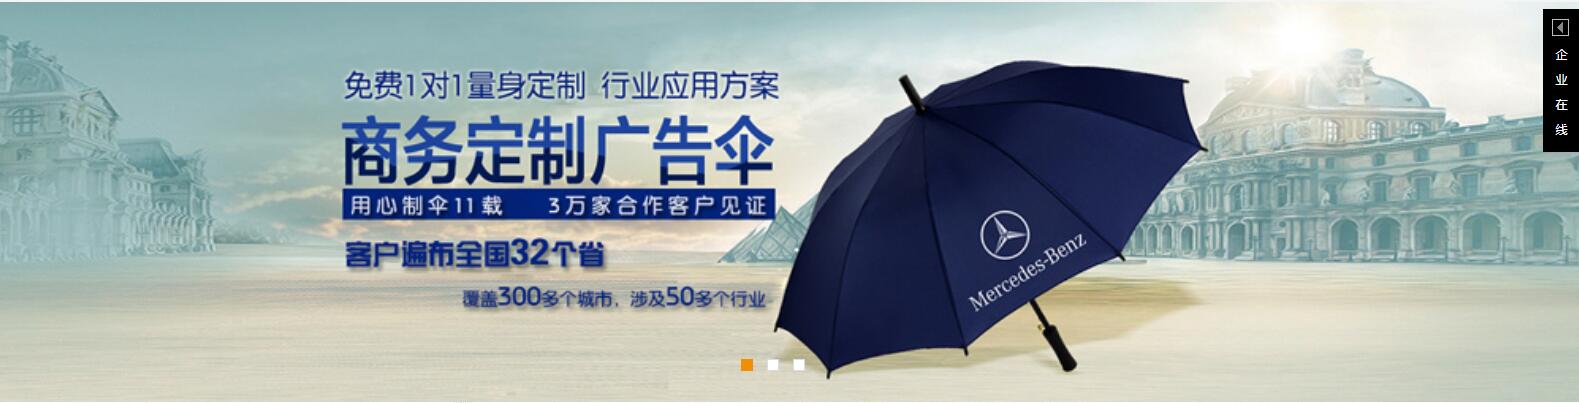 吉安太阳伞厂 吉安广告太阳伞